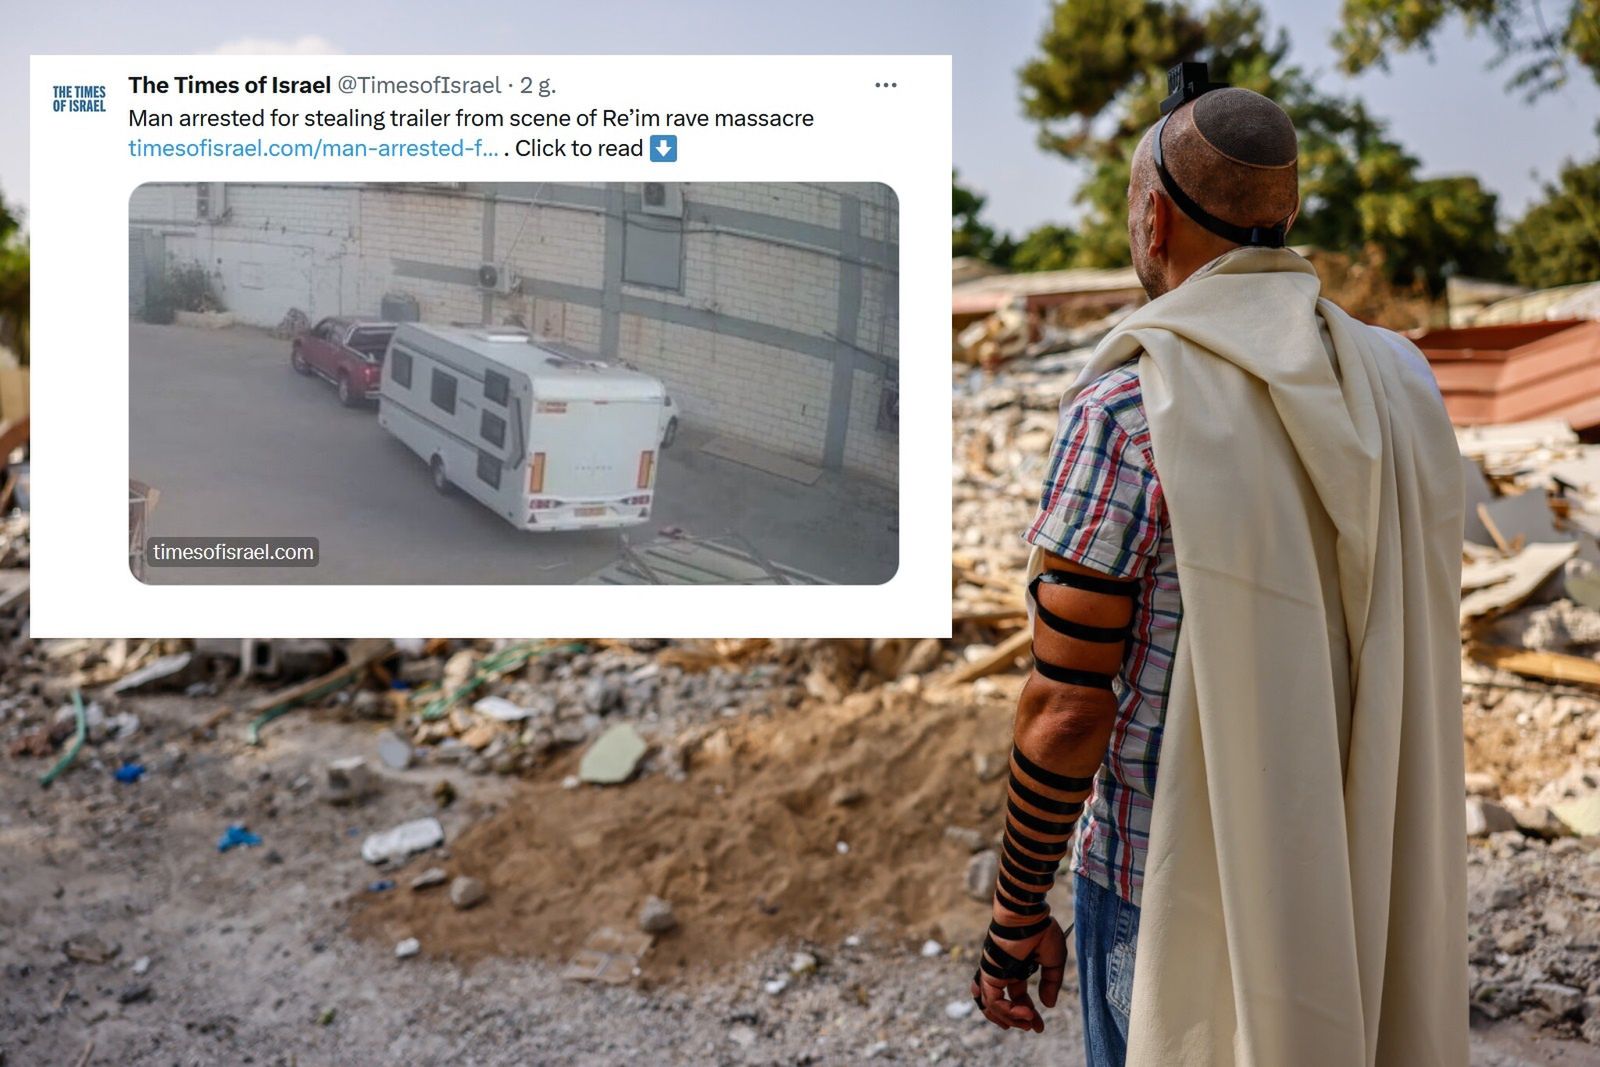 Izrael: Miał pomóc w poszukiwaniach zamordowanych. Zrobił coś okropnego